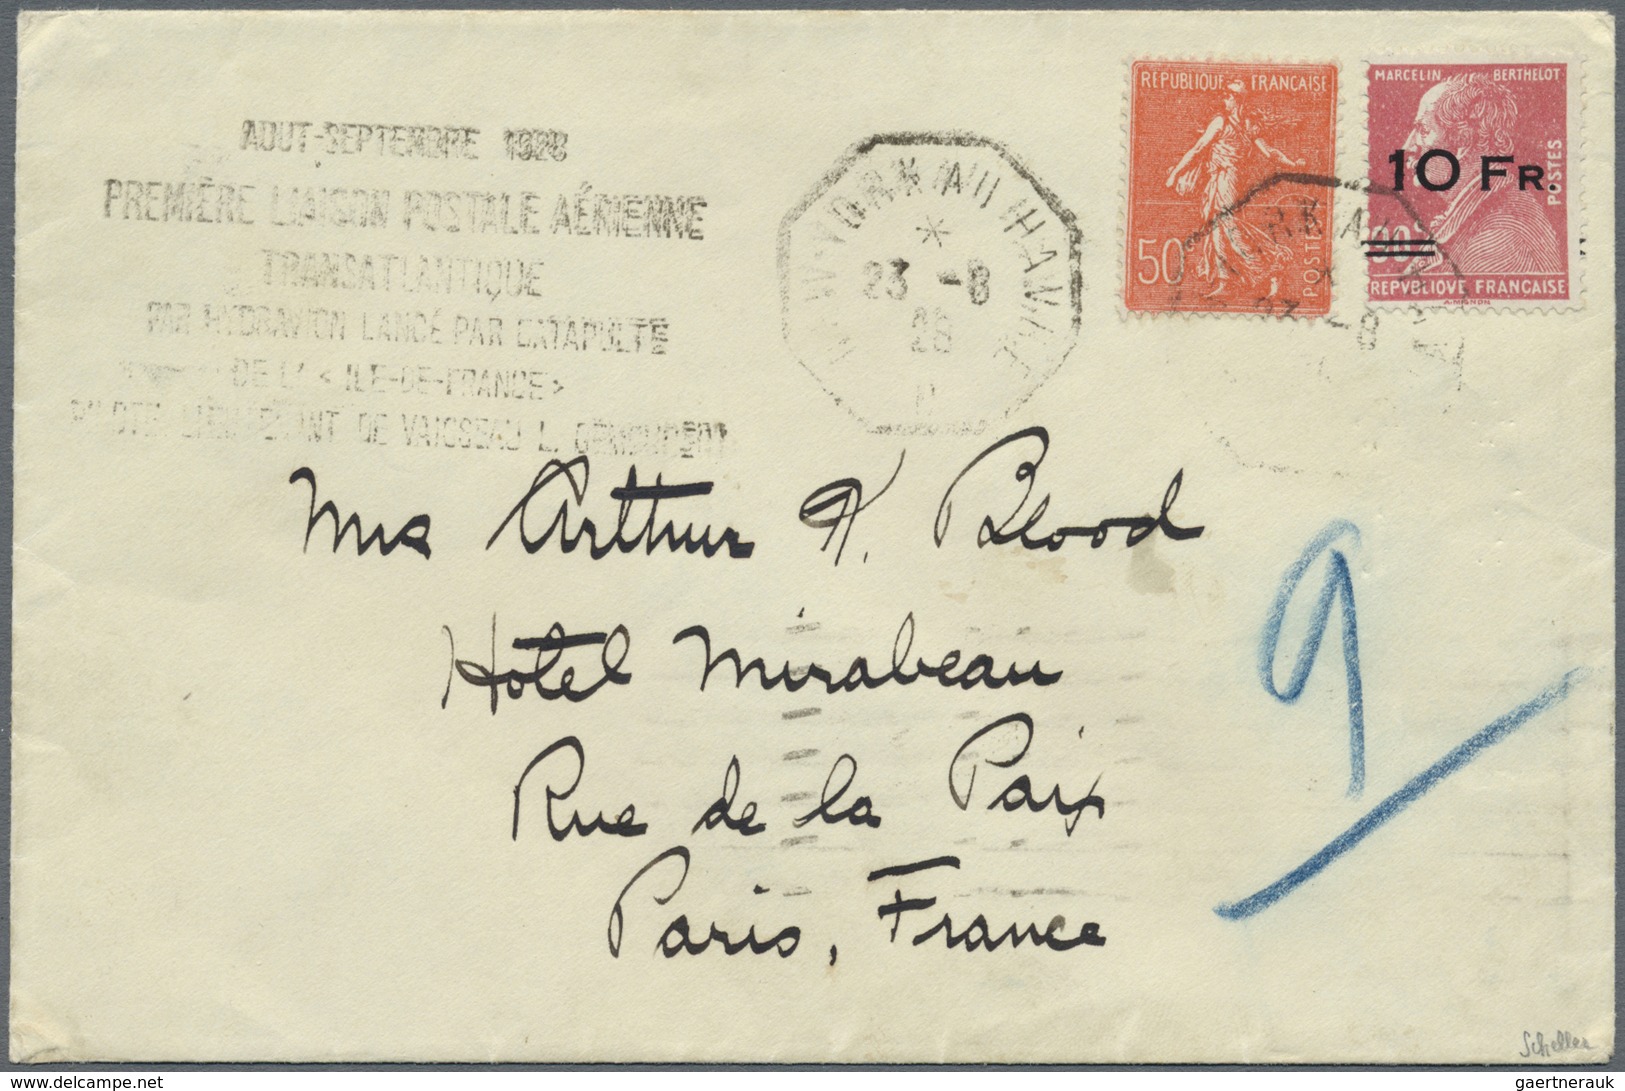 Br Frankreich: 1928, Flugpostmarke 'Ile De France' 10 Fr. Auf 90 C. Lilarosa, Taufrisches Luxusstück Un - Oblitérés